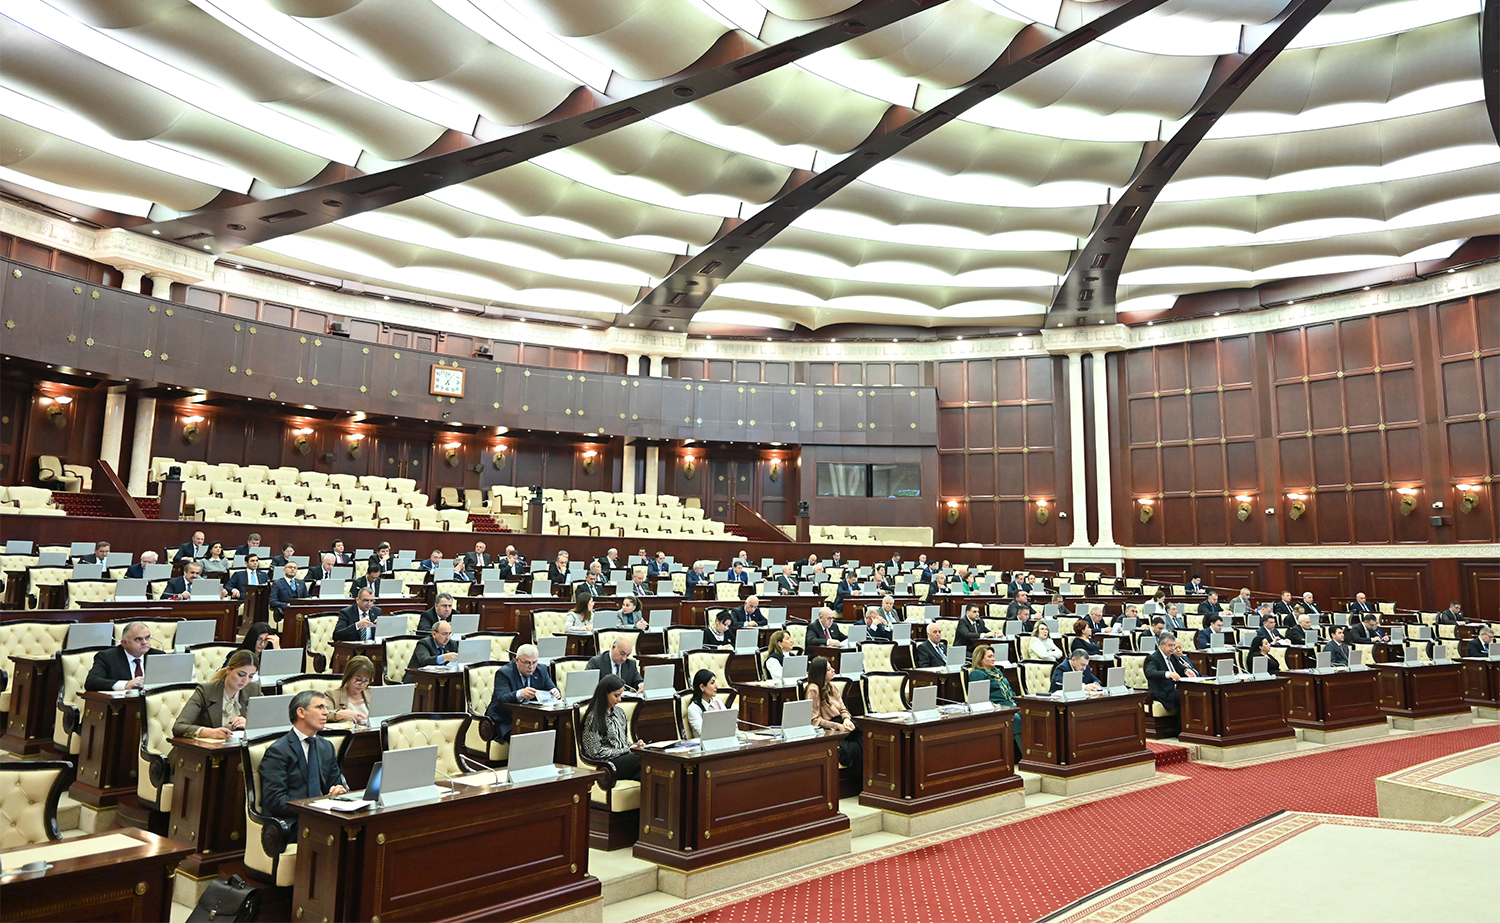 Milli Məclisin plenar iclasında